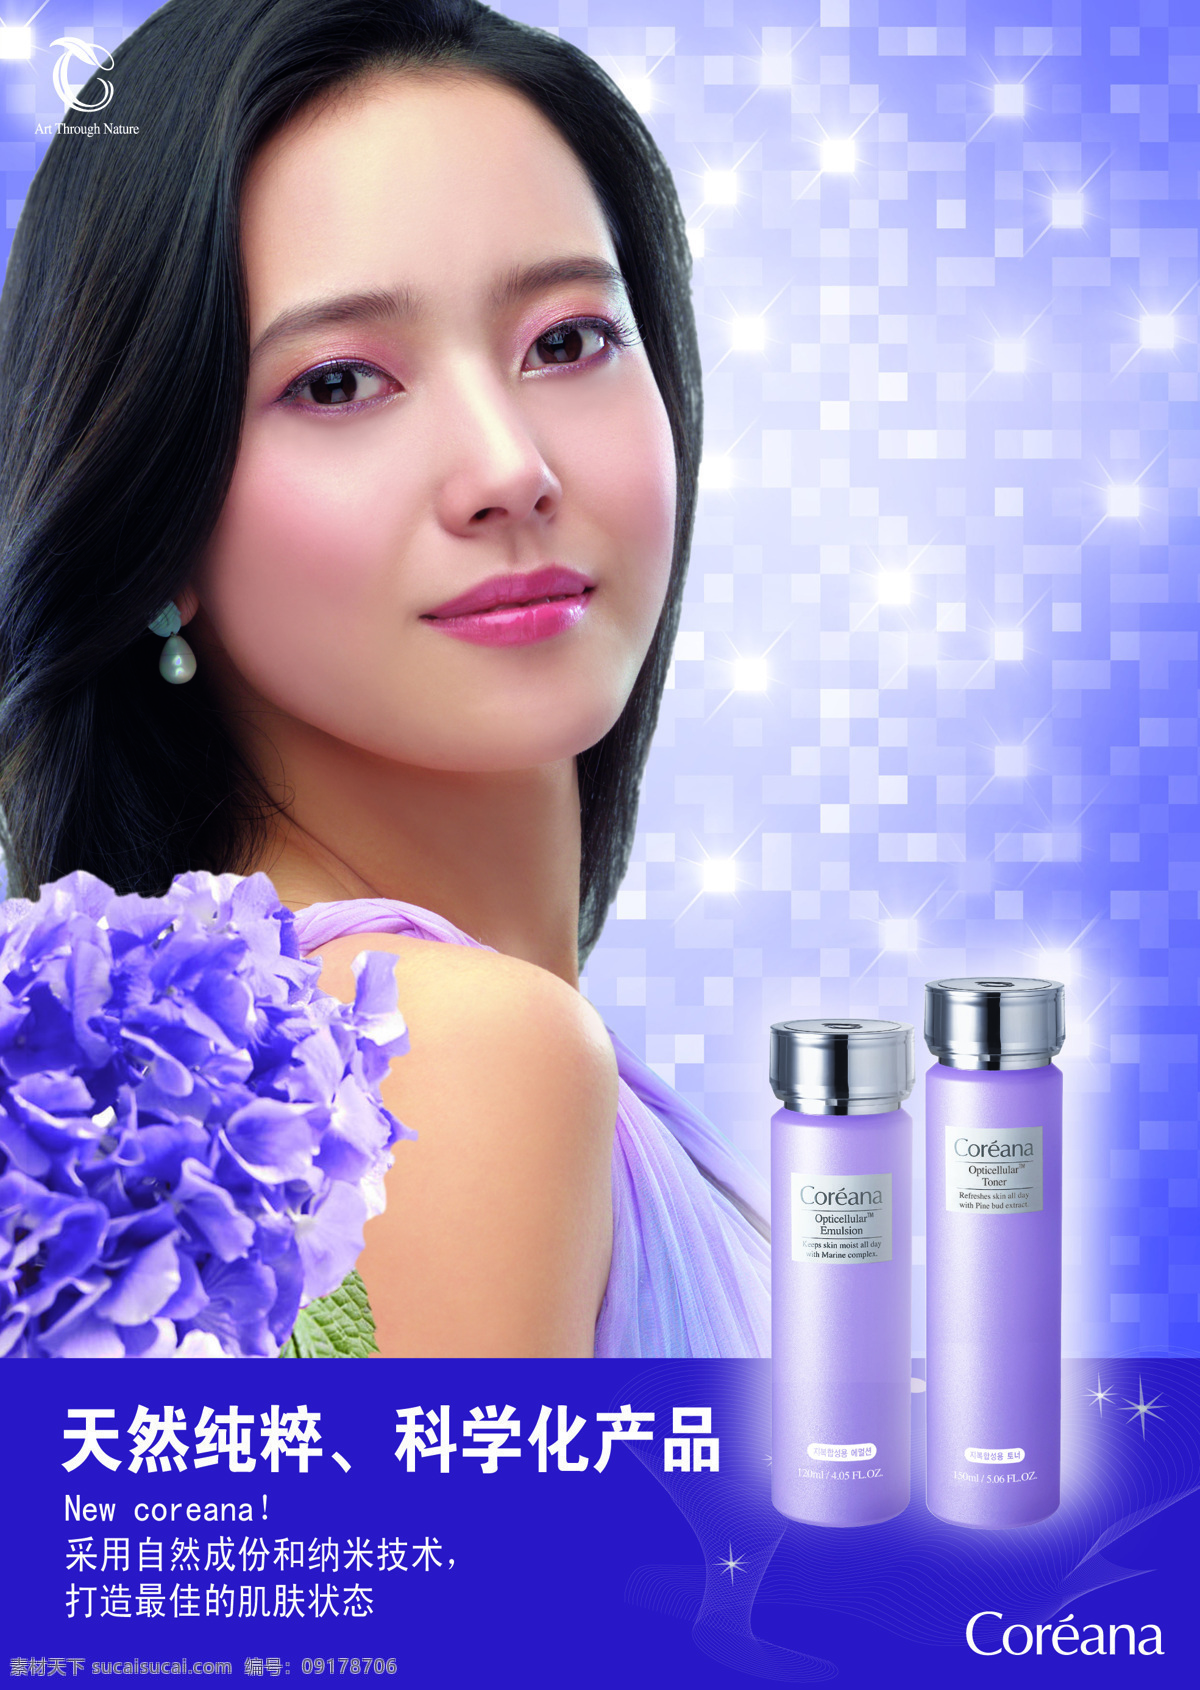 韩国 高丽 雅 娜 系列 高丽雅娜 化妆品 产品 代言人 蓝色 背景 韩国三大品牌 花 星星 格子